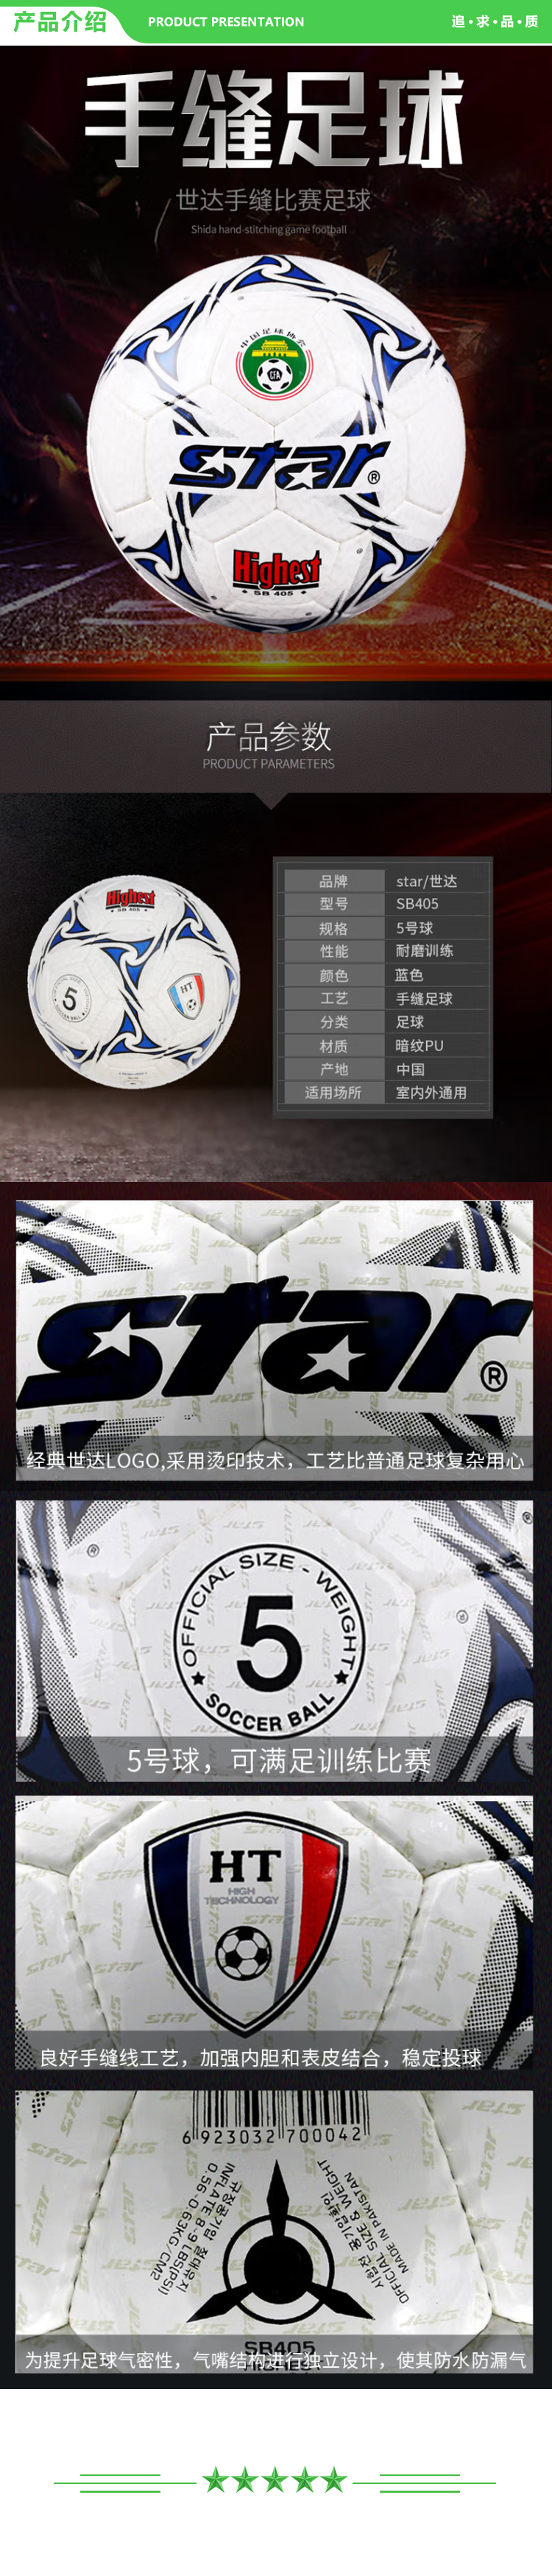 世达 star SB405 耐磨 PU 手缝 5号 比赛用 足球  .jpg